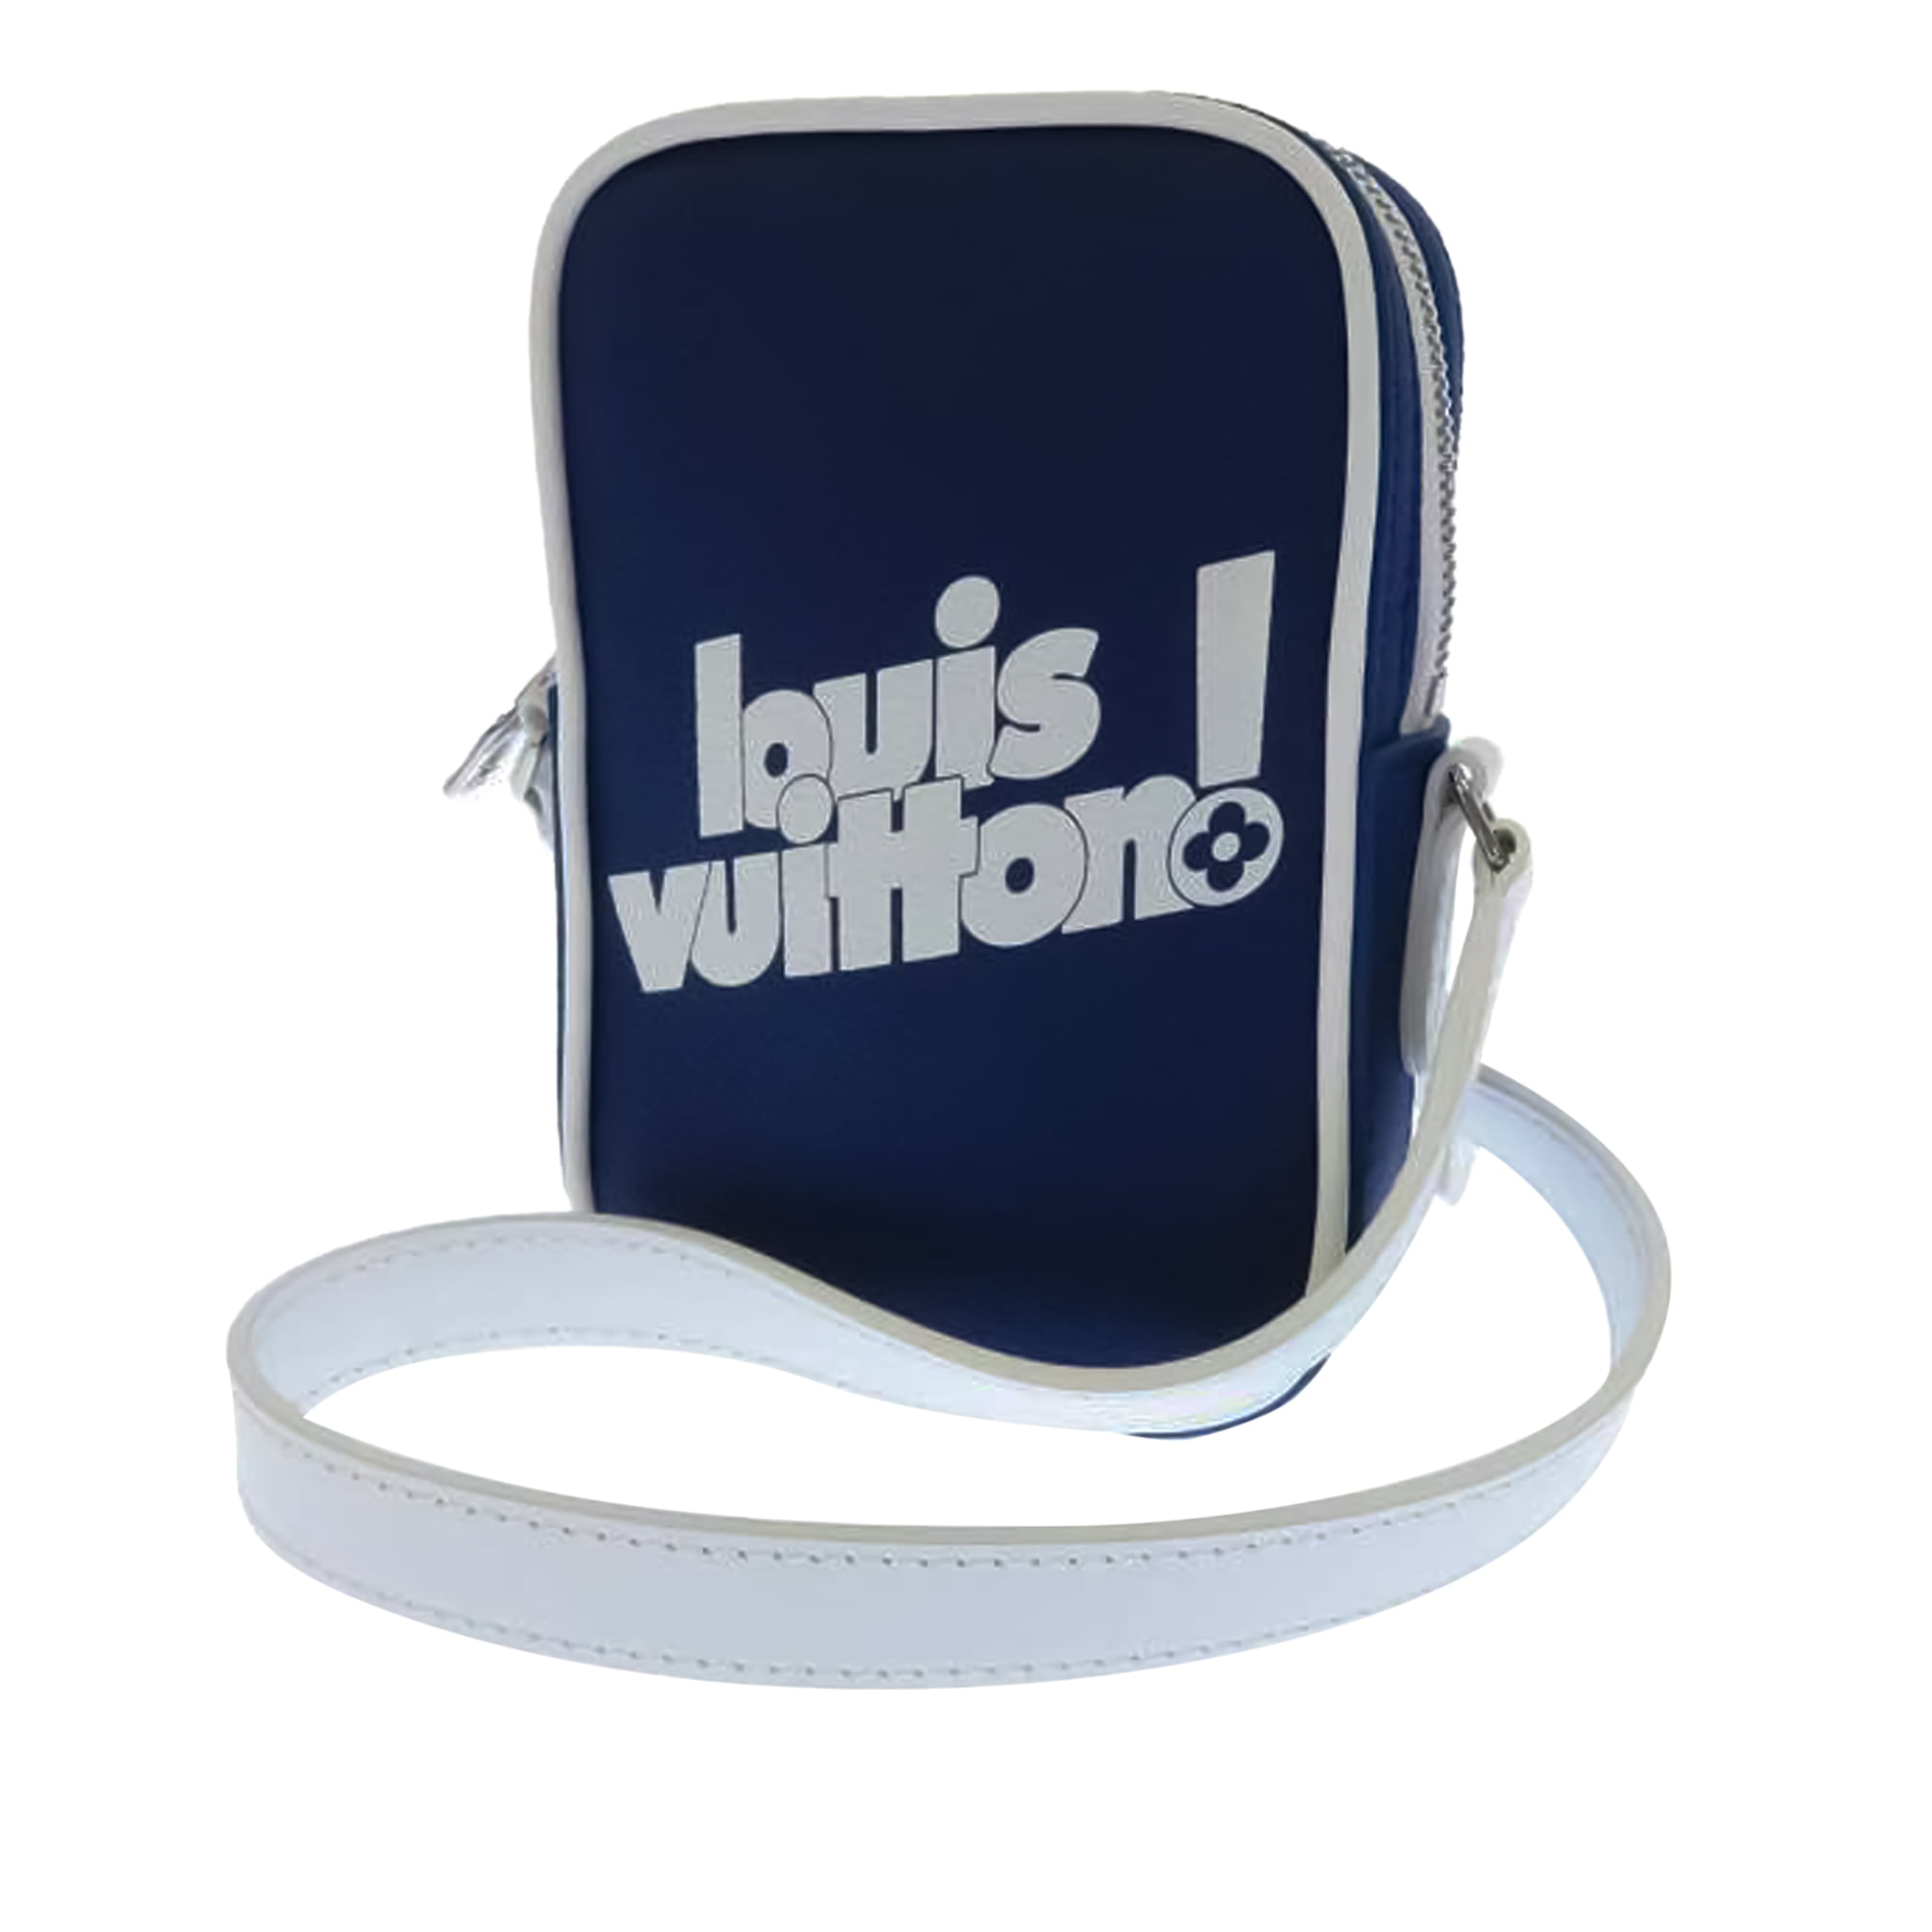 Louis Vuitton Danube Crossbody Bag Review 